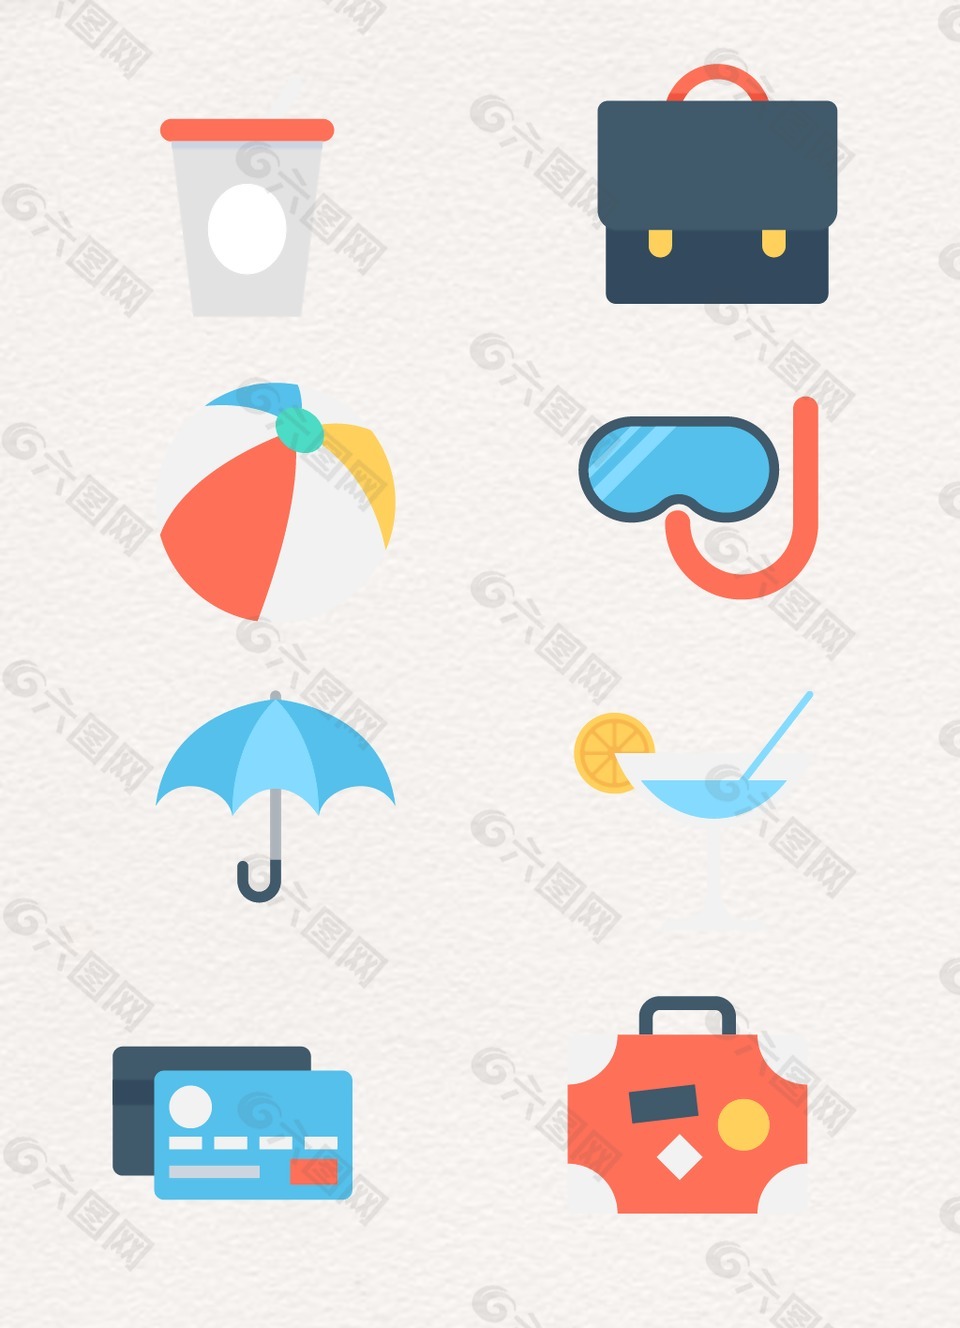 包包皮球雨伞图案设计